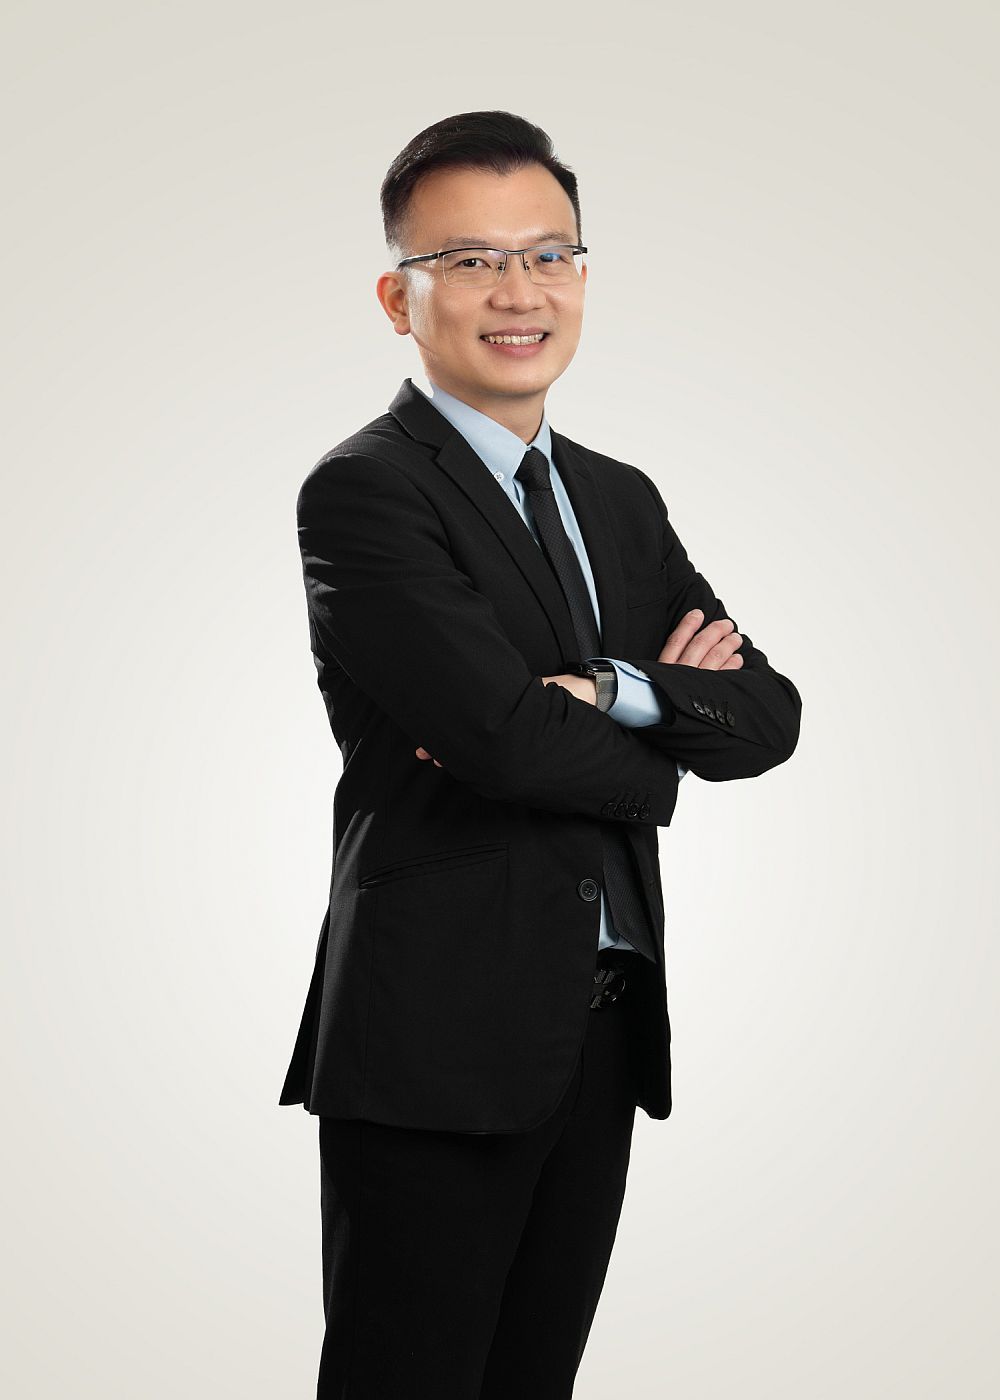 الدكتور تشونغ تزي شنغ، المدير الإداري لشركة DC Healthcare